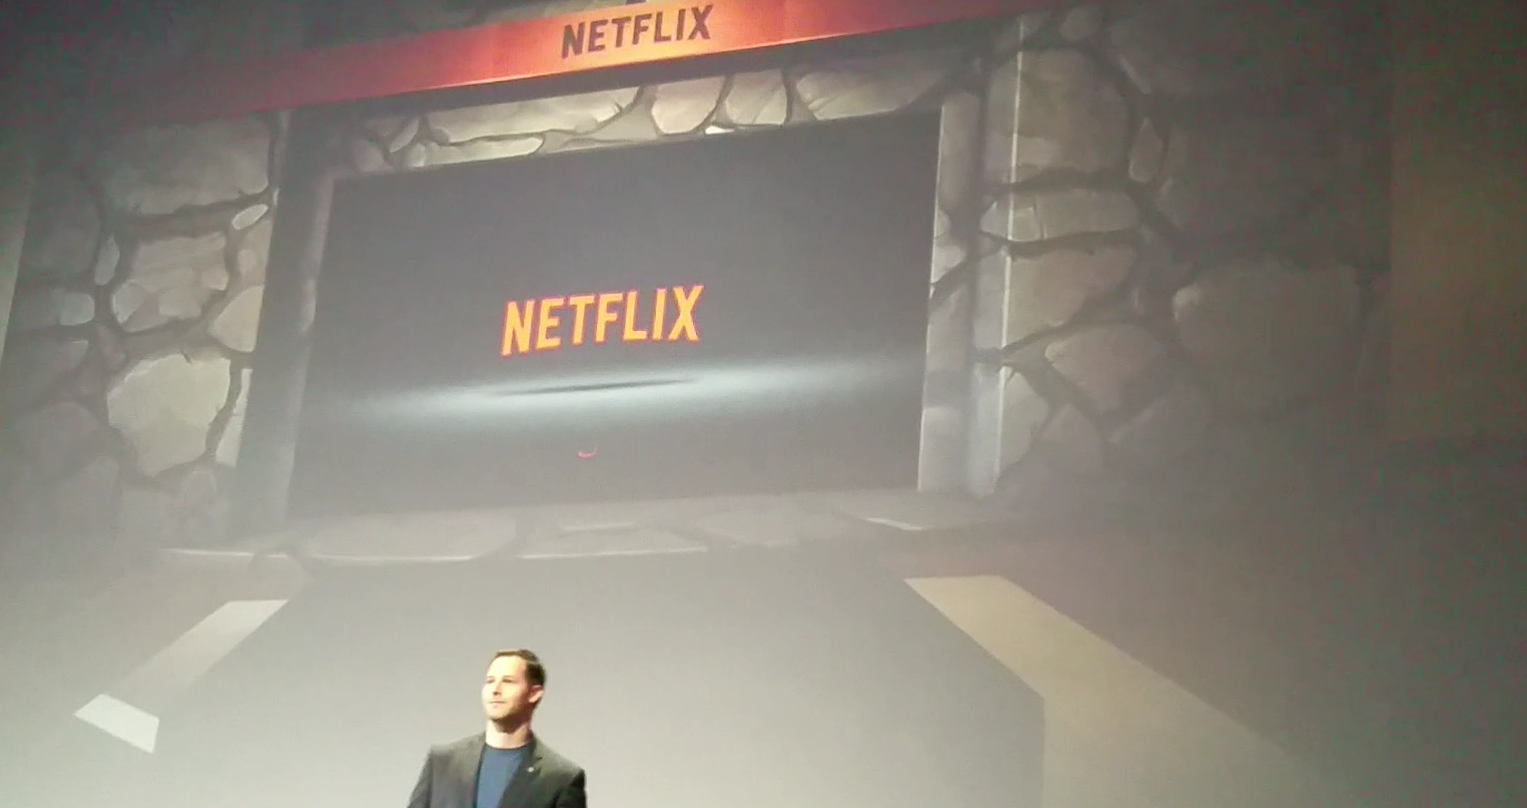 Max Cohen announces Netflix at Oculus Connect 2